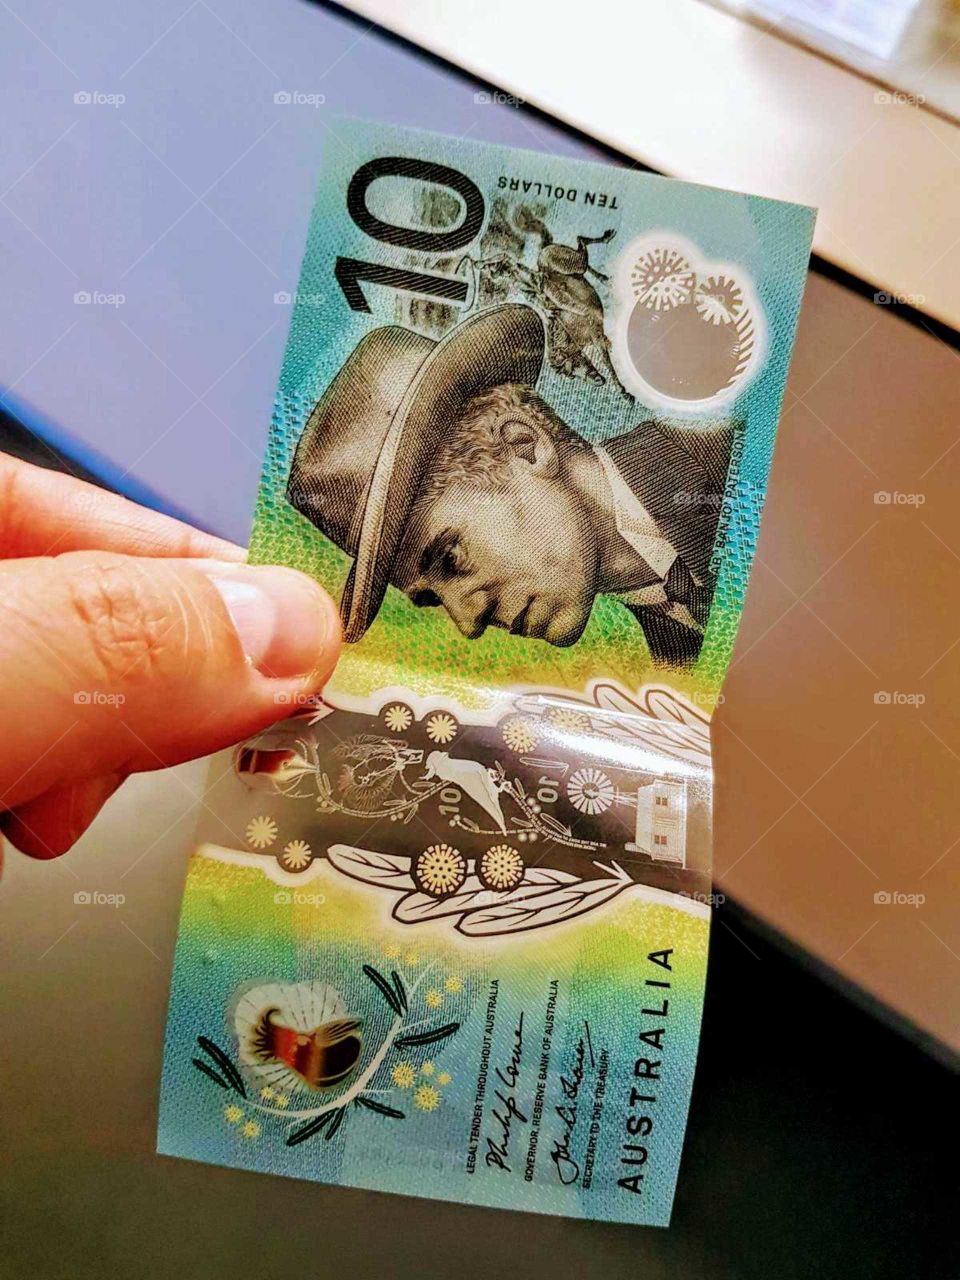 Aussie dollars!